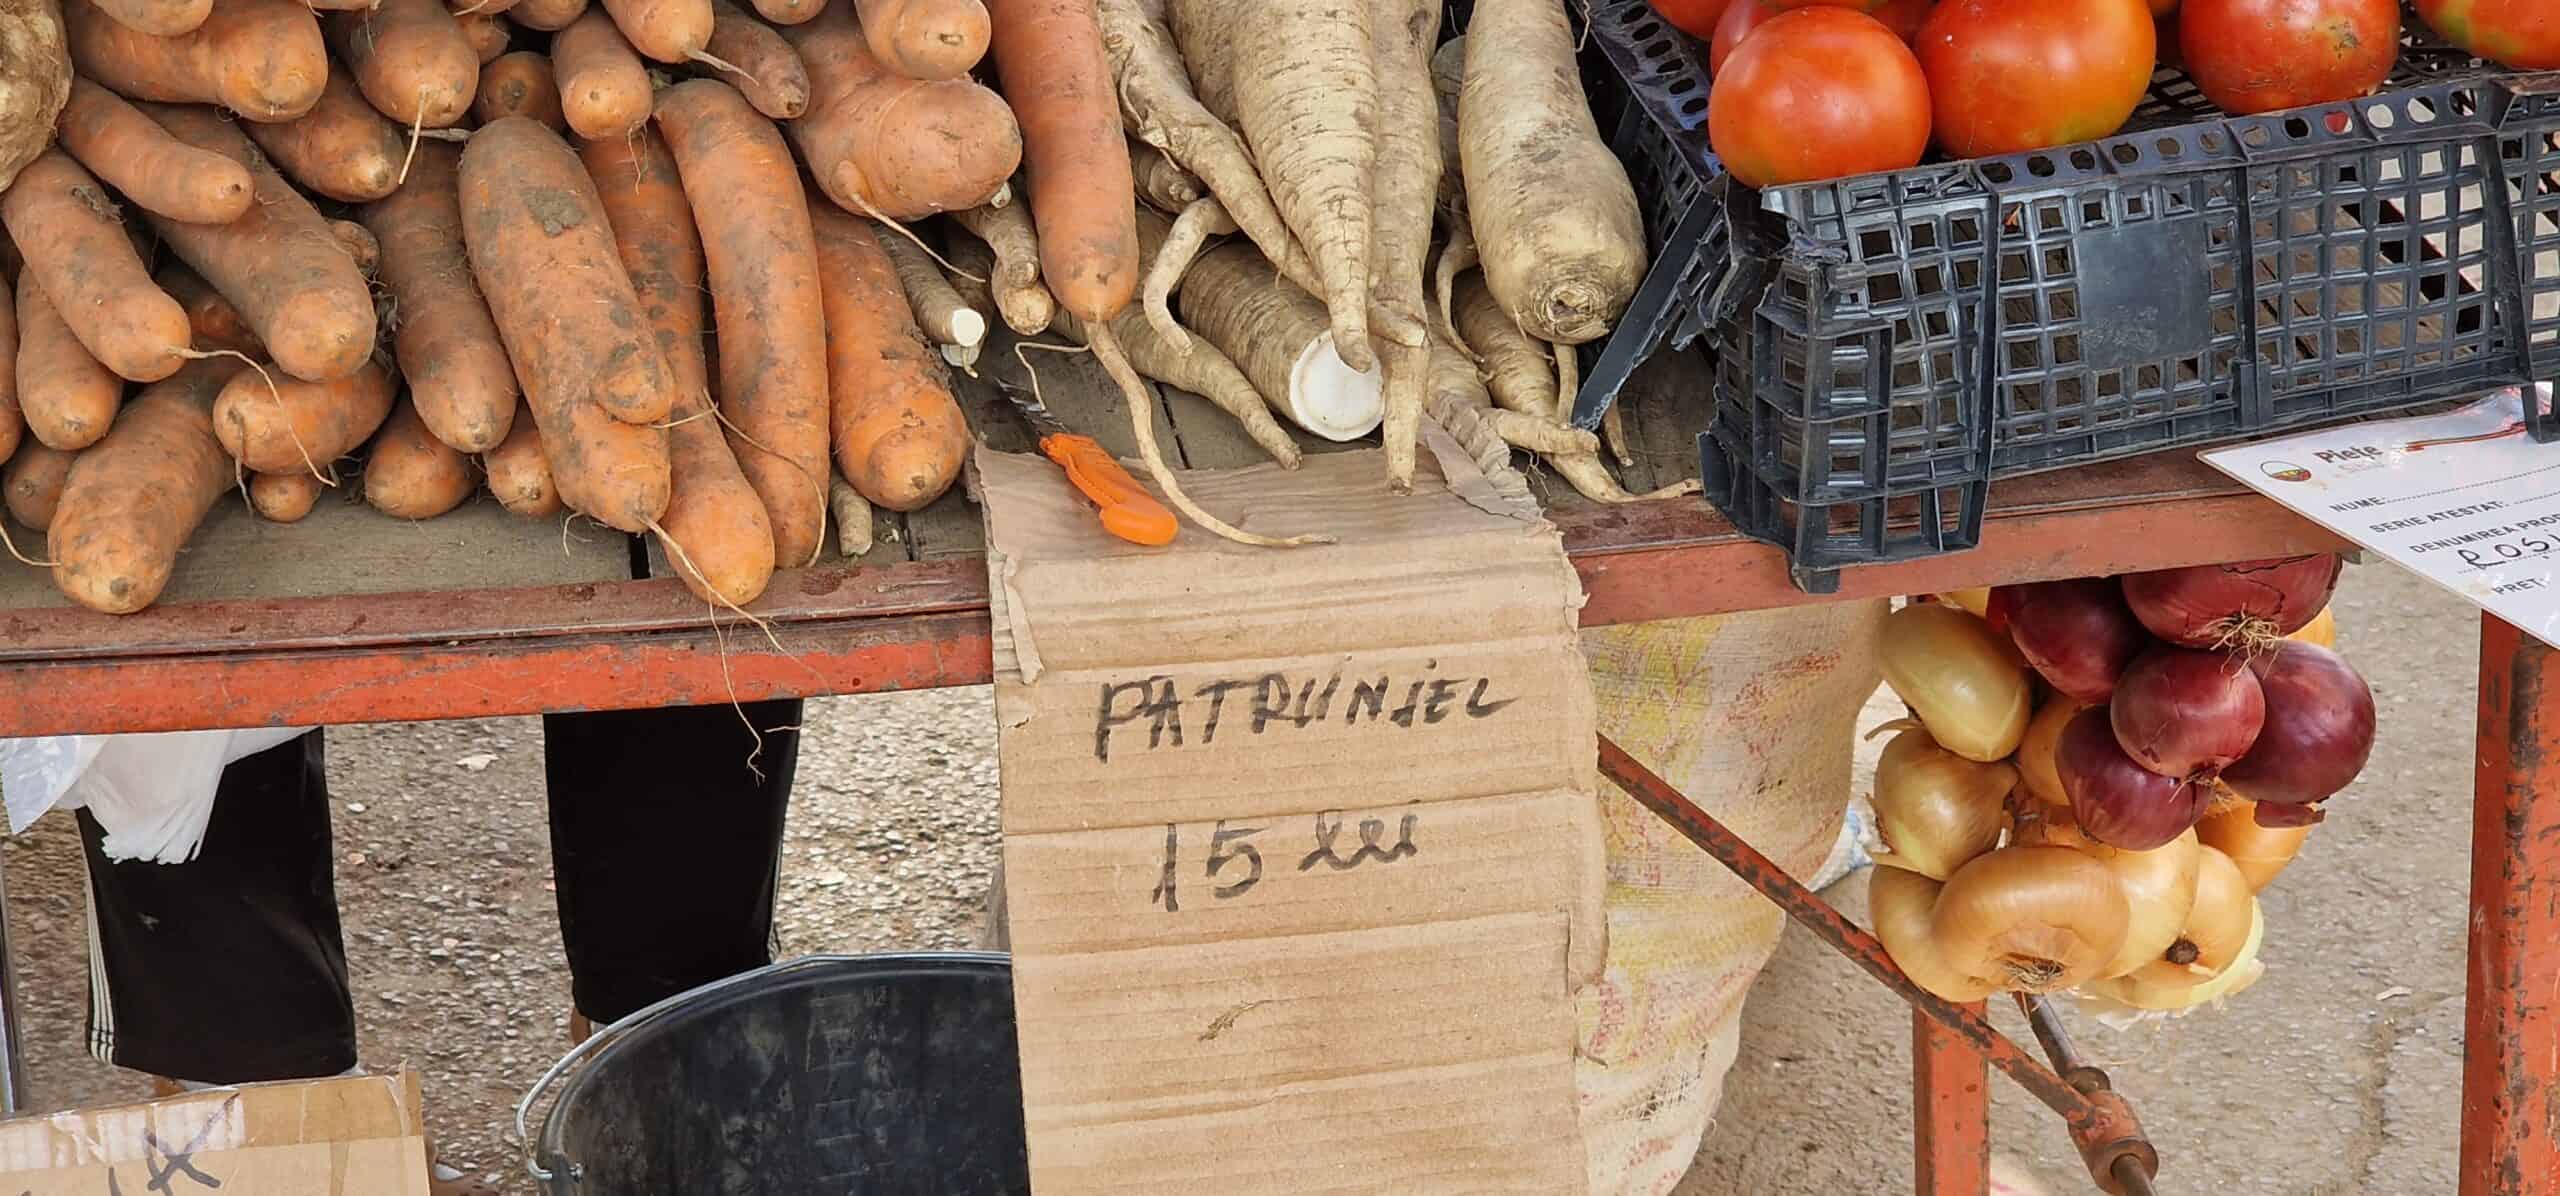 top 5 cele mai scumpe legume din piața cibin. vedeta este ardeiul iute cu 30 de lei kg (foto)